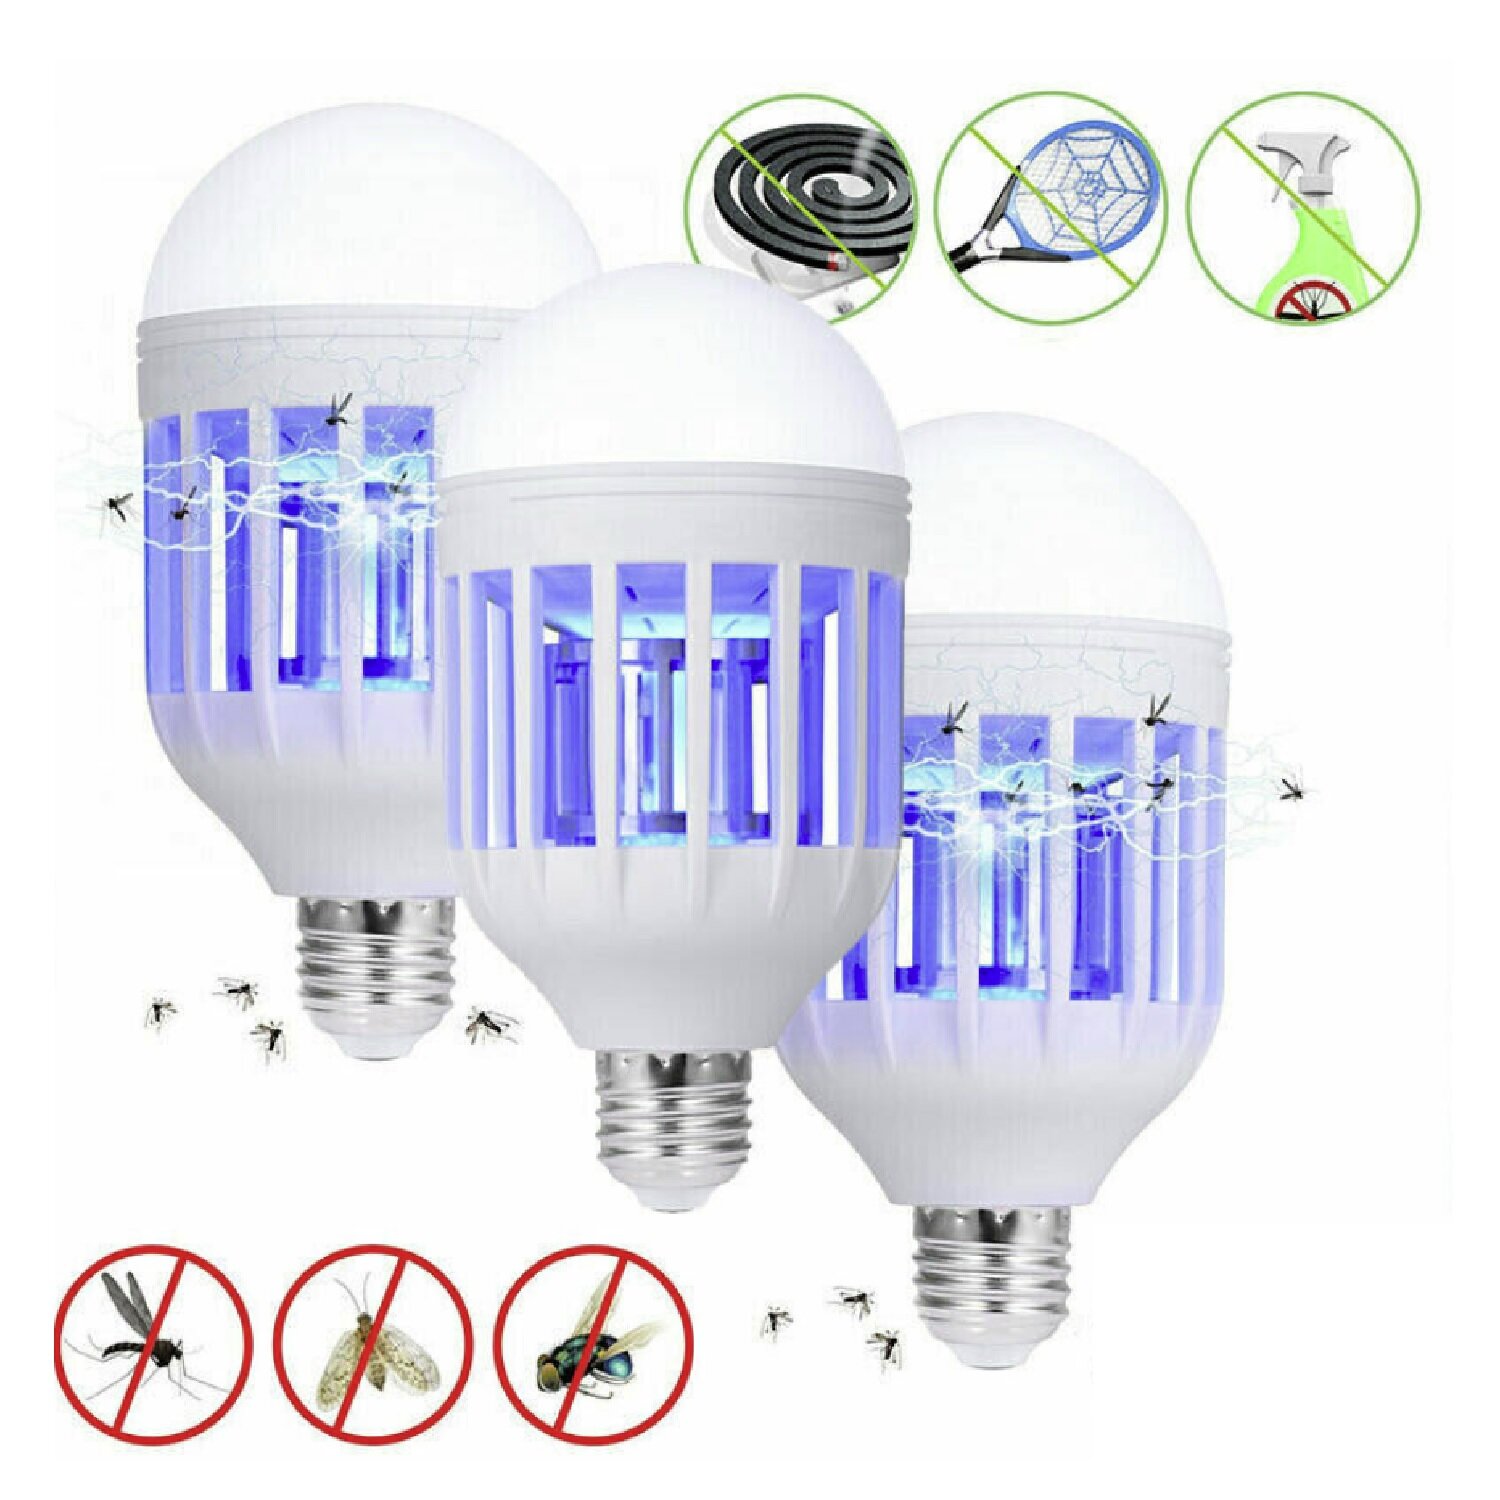 Light Zapper LED Lightbulb Bug Mosquito Fly Insect Killer Bulb Lamp Home 